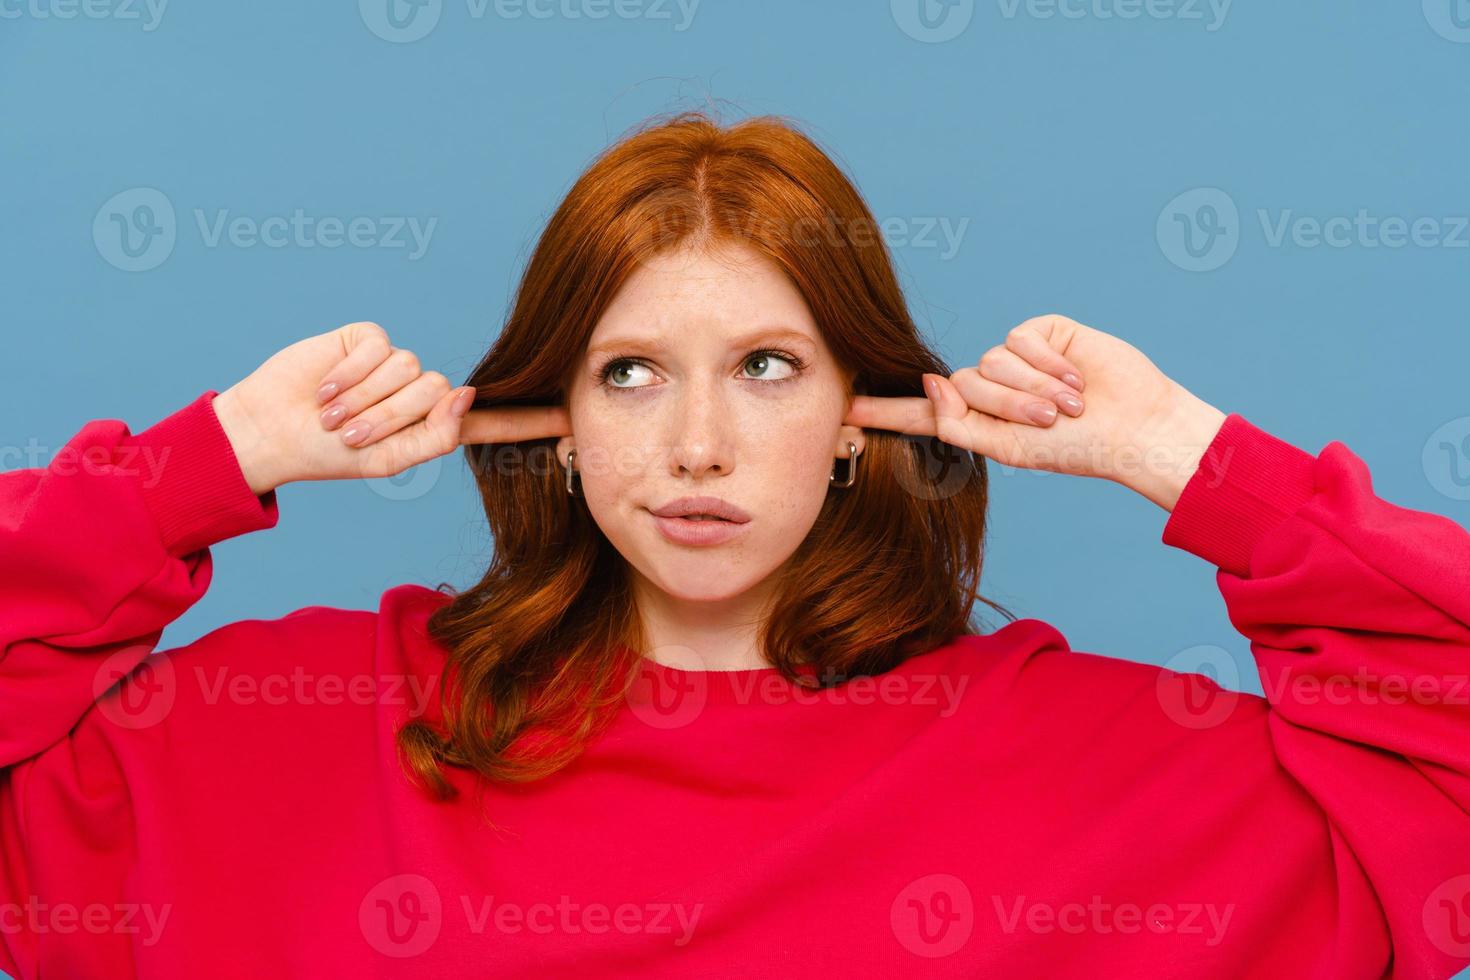 förbryllad ingefära kvinna som bär röd tröja pluggar hennes öron foto